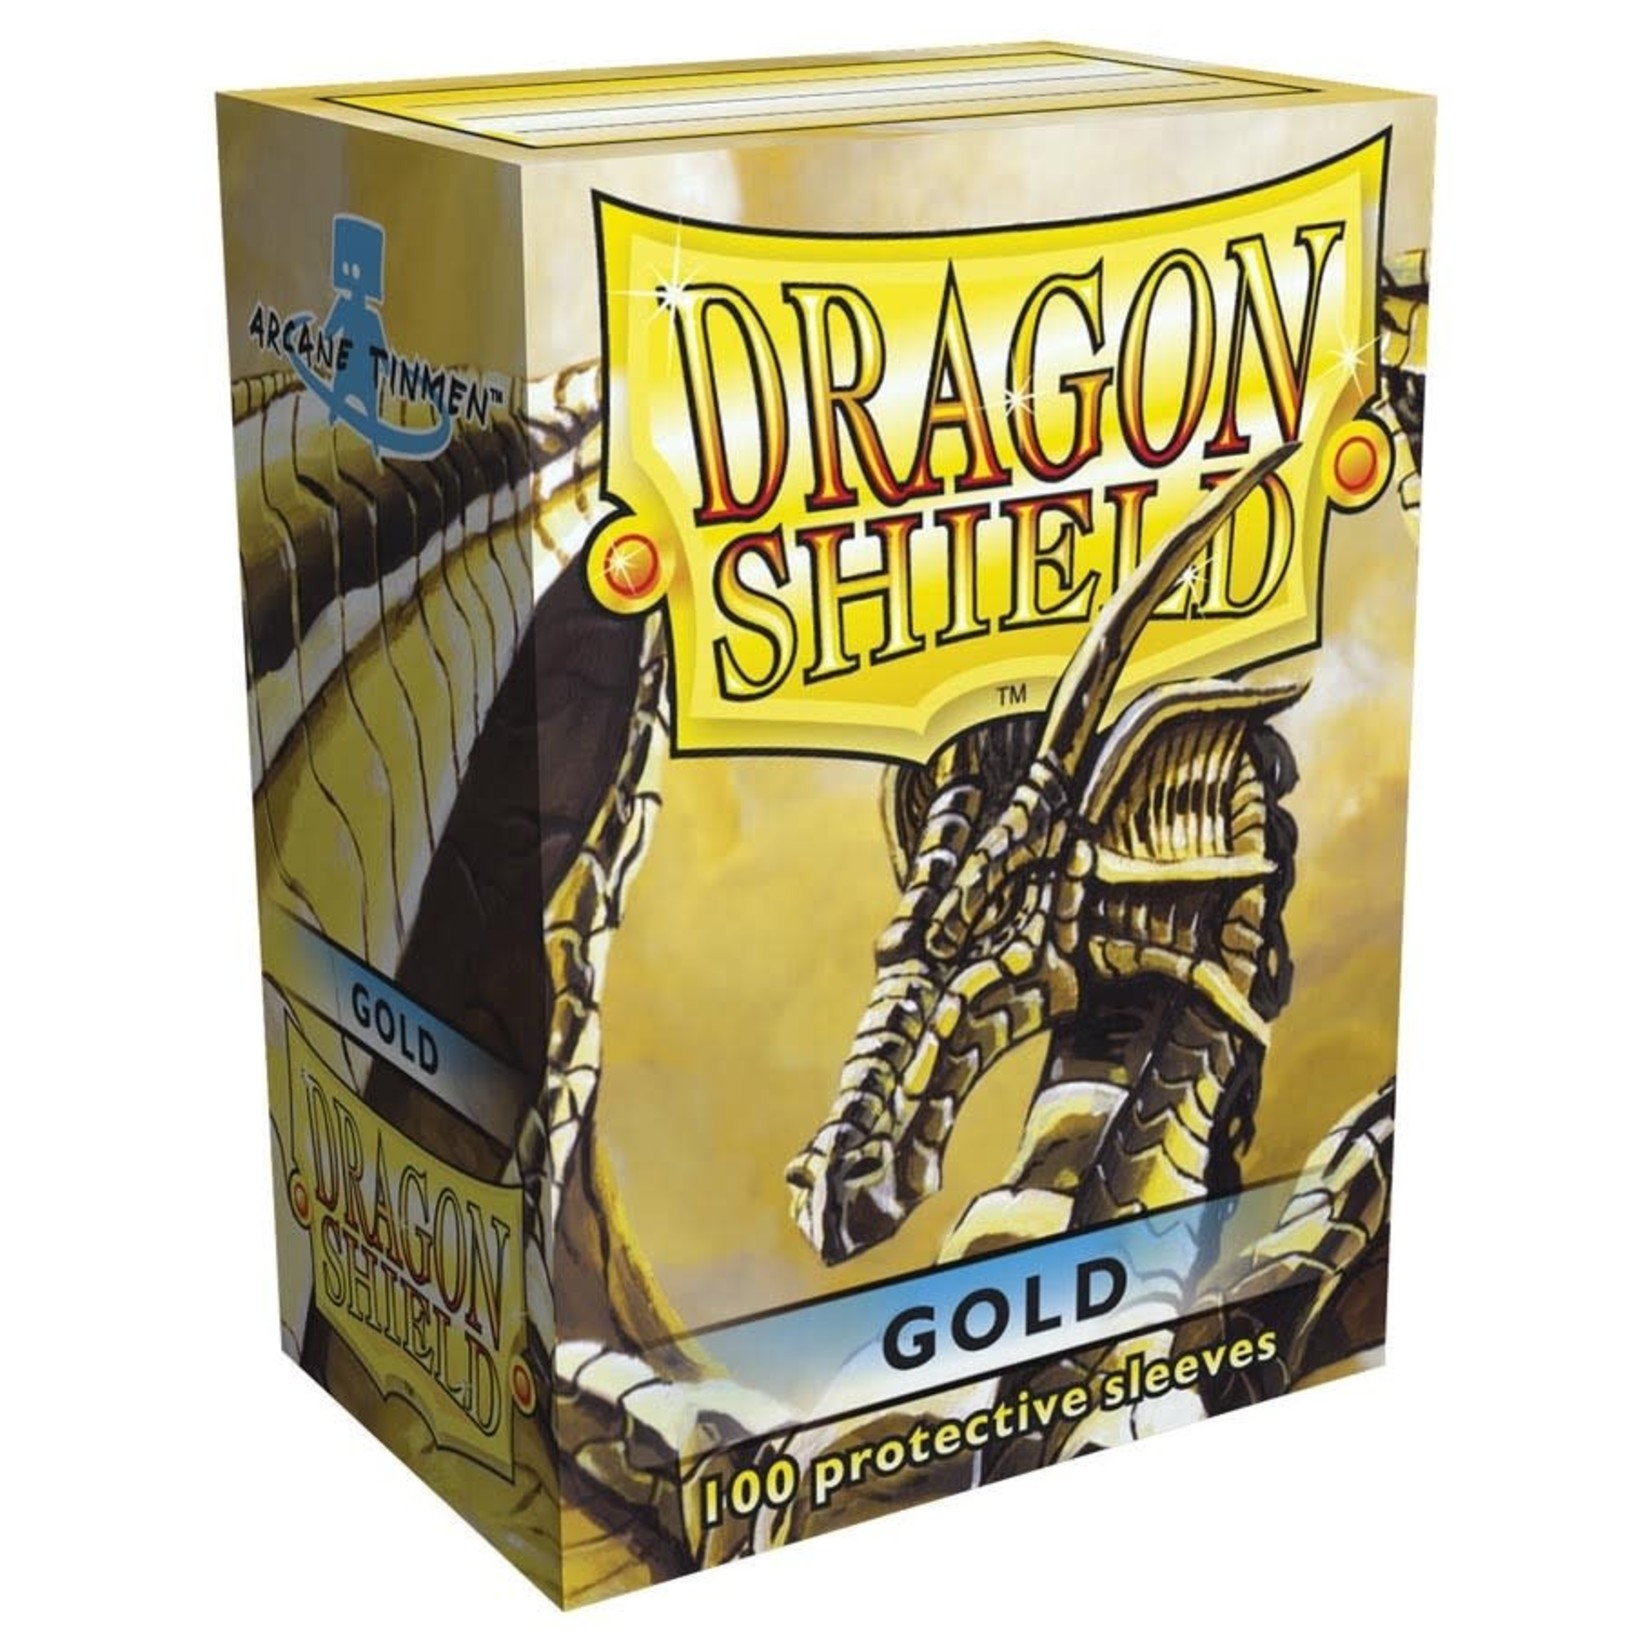 Arcane Tinmen Dragon Shield: 100 Protective Sleeves: Gold